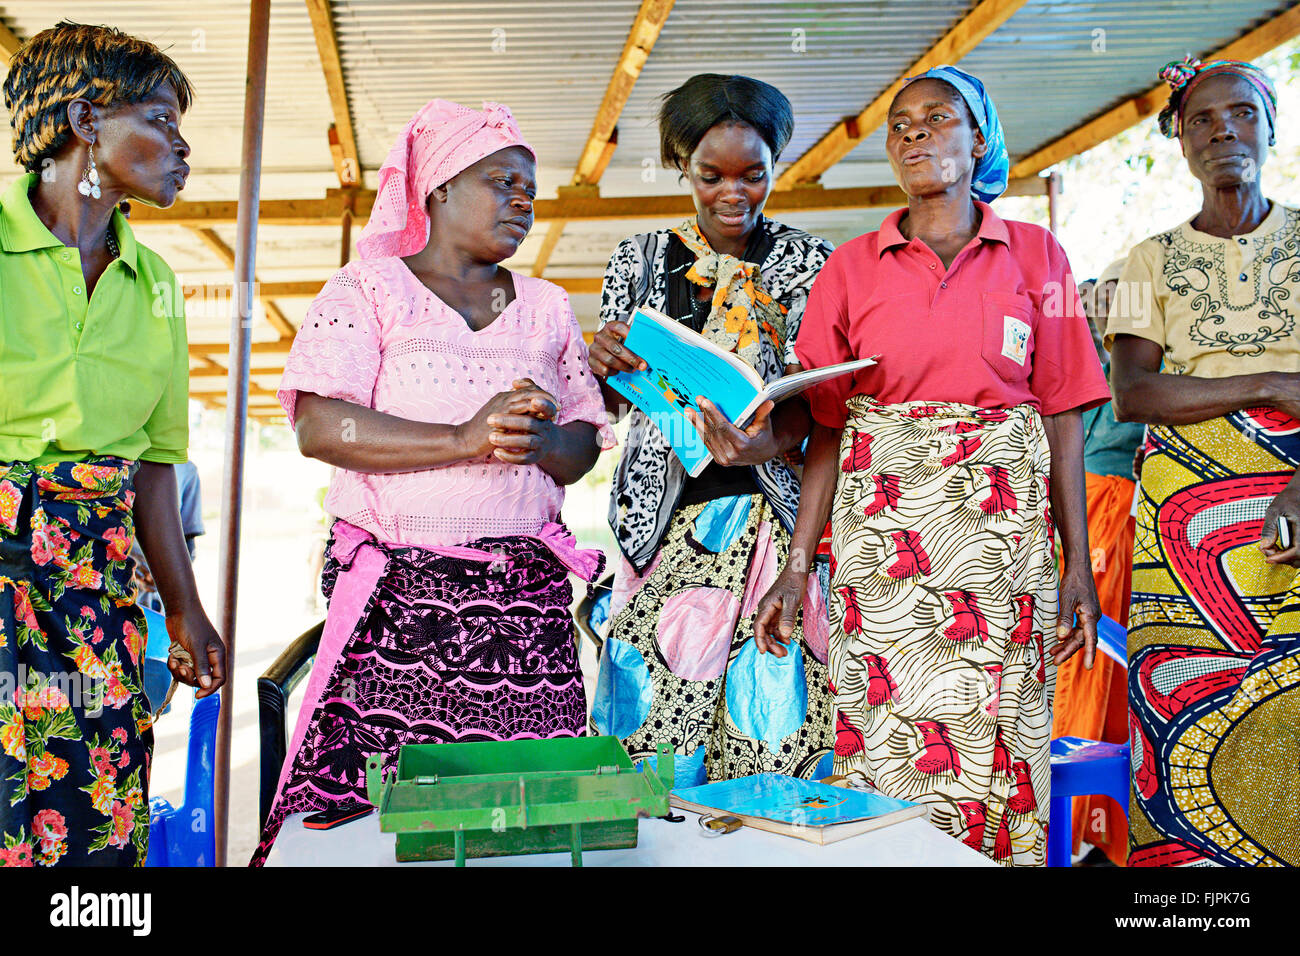 Members of a women's bank group. Copperbelt region, Zambia. Stock Photo